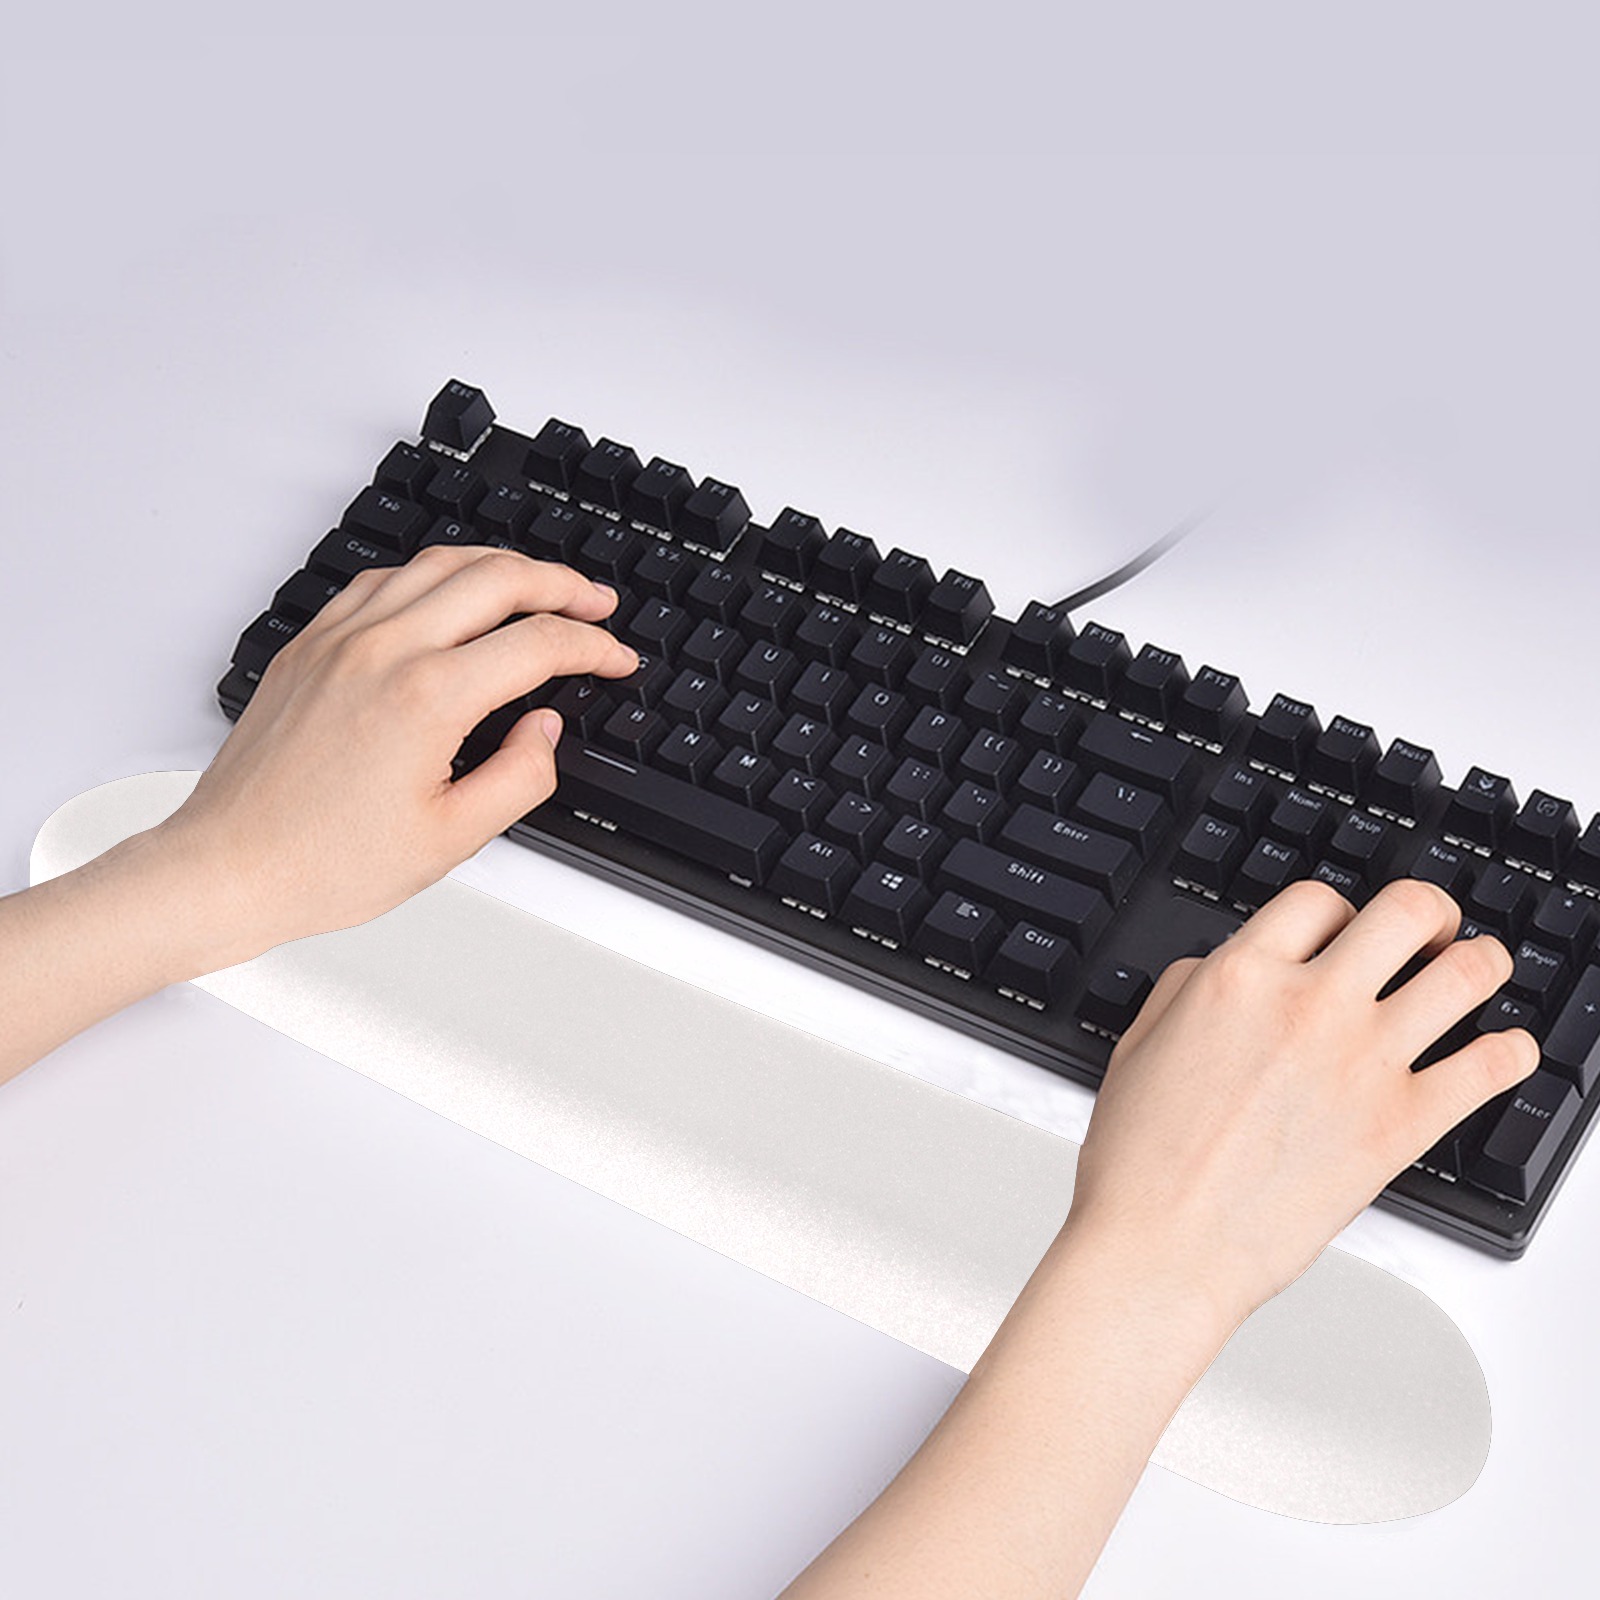 Keyboard Wrist Rest Pad